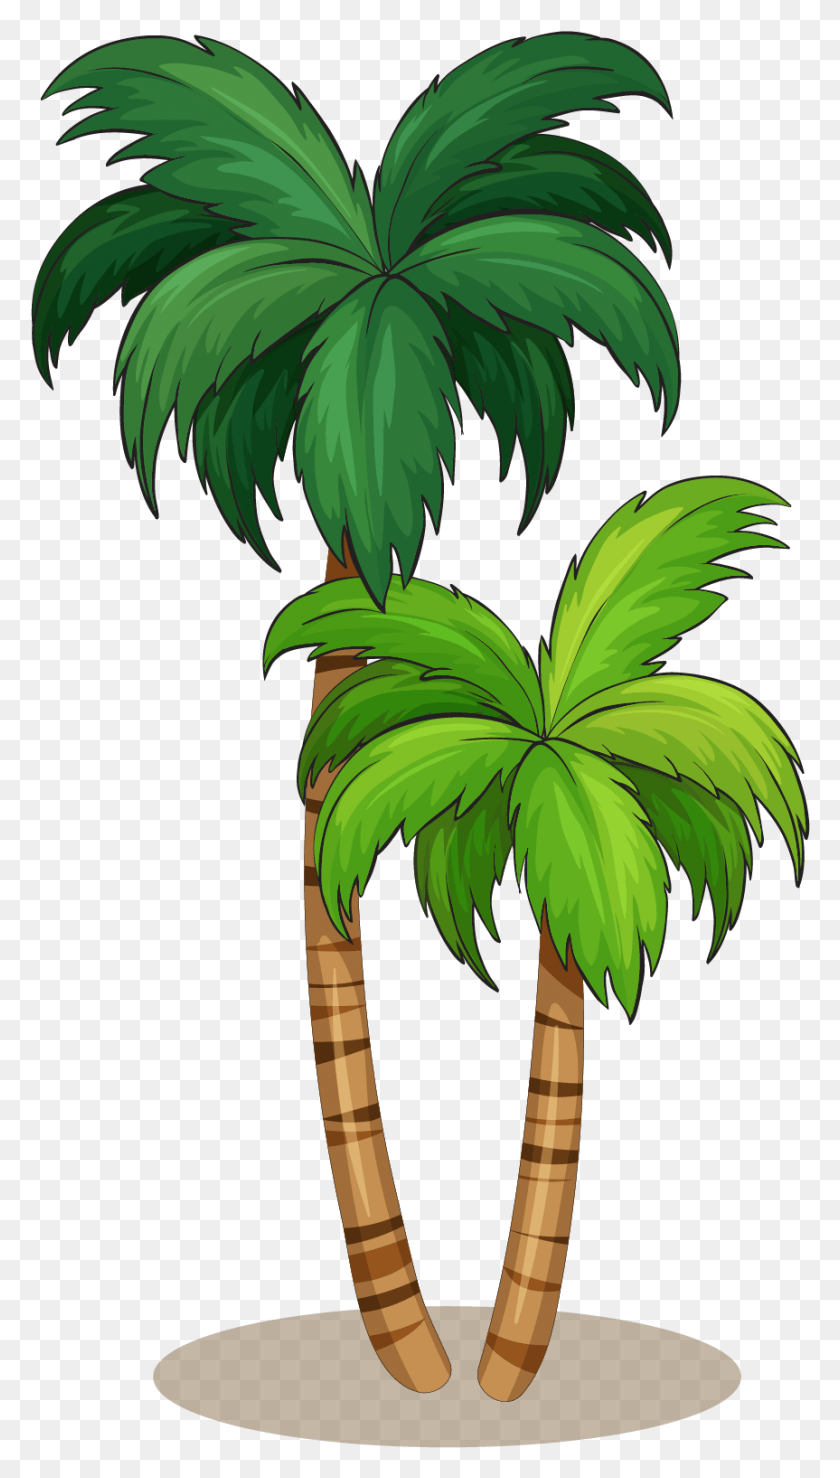 863x1569 Arecaceae Royalty Free Иллюстрация Обезьяна В Кокосовой Пальме, Растение, Дерево, Пальма Hd Png Скачать